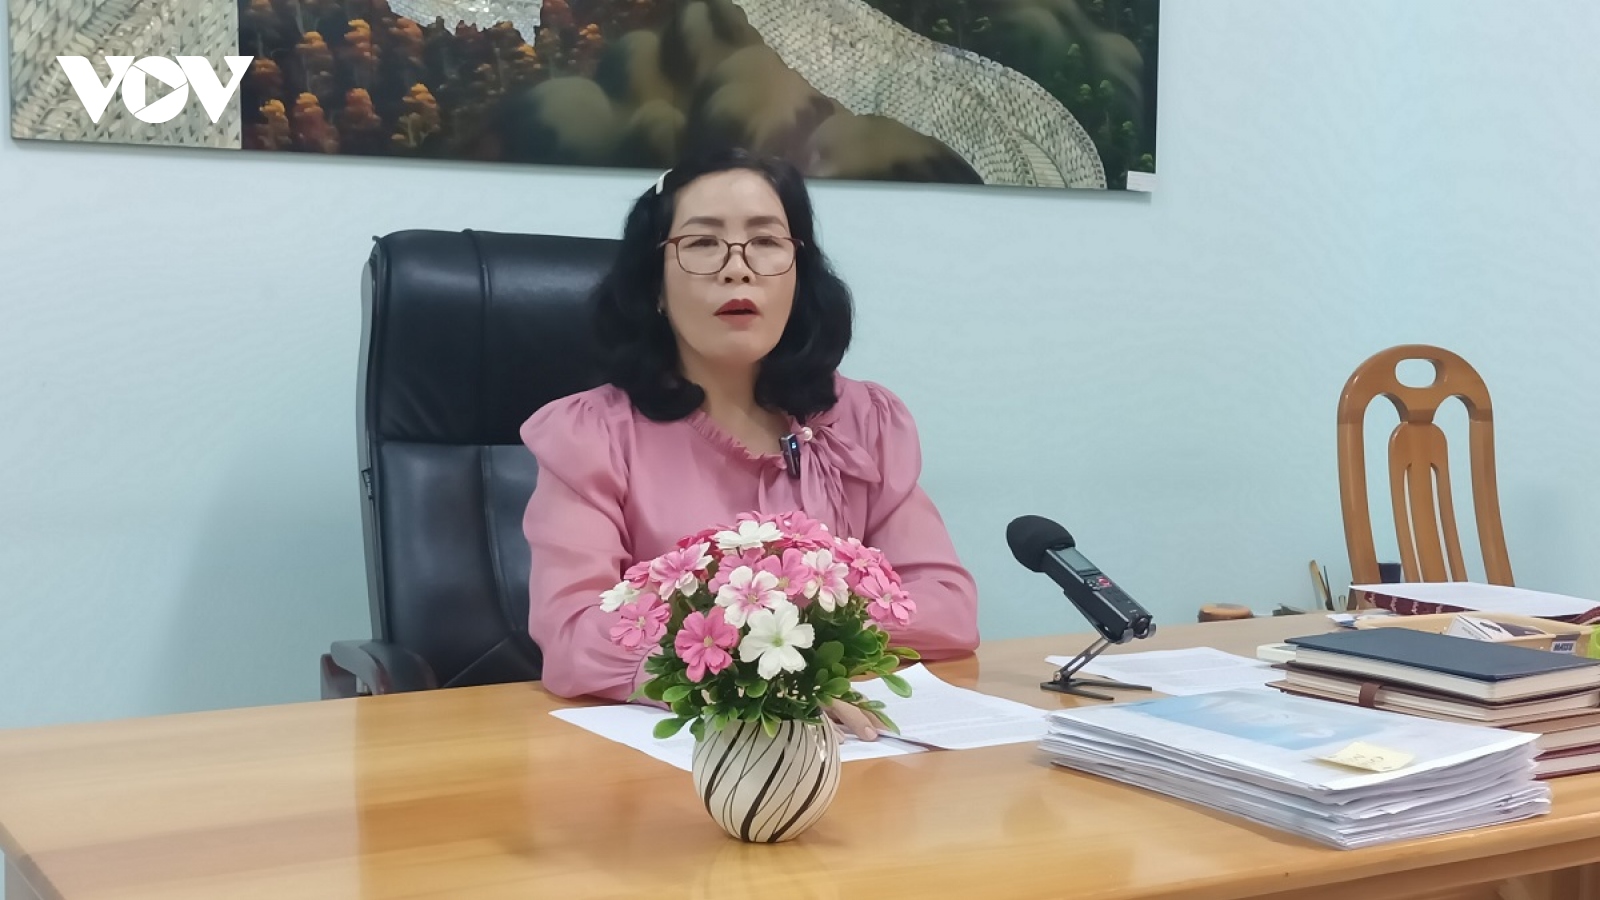 Bình Thuận yêu cầu xử lý nghiêm vụ thầy giáo bị hành hung tại nhà